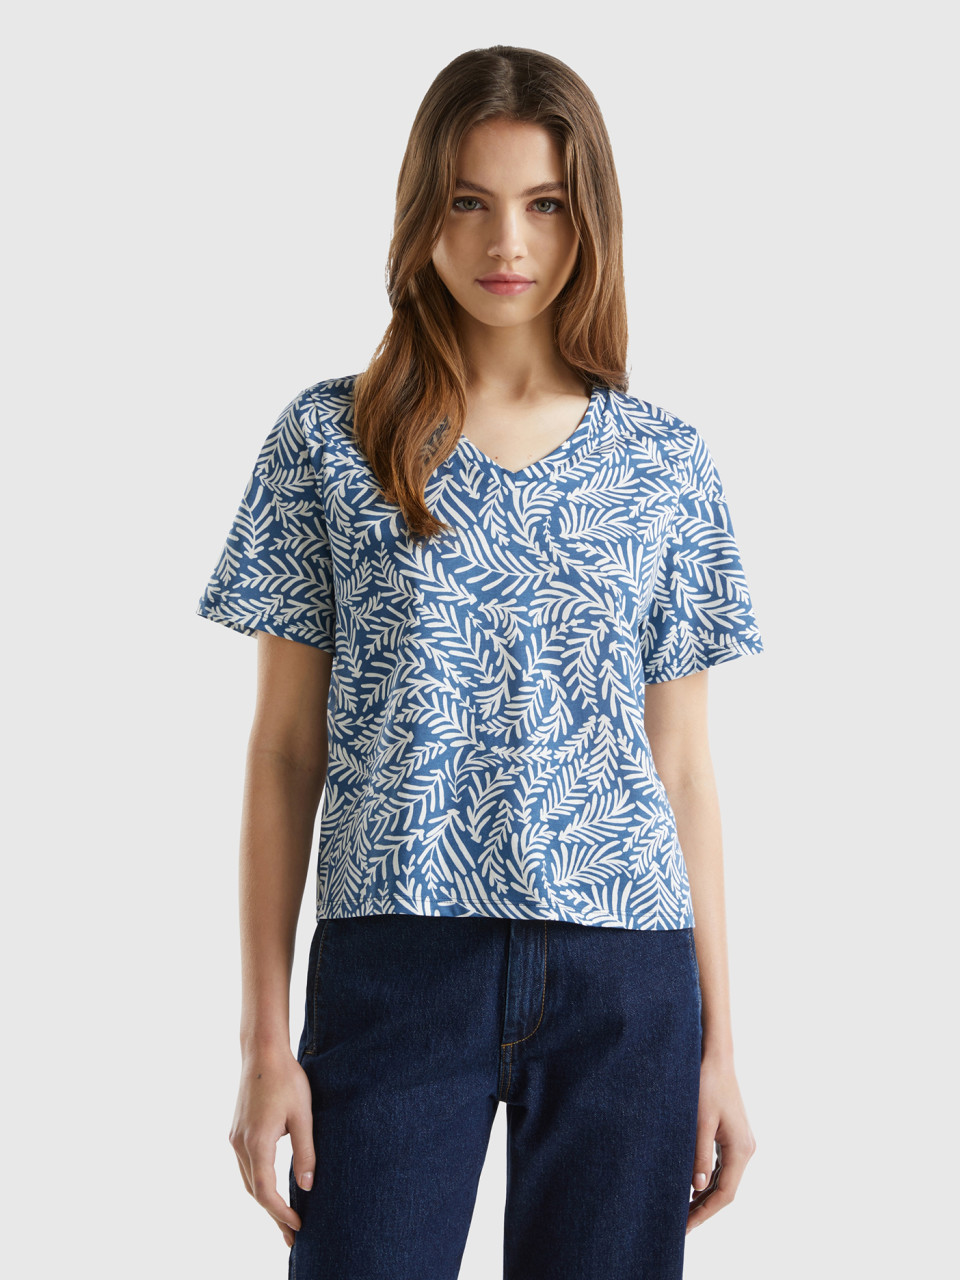 Benetton, Long Fiber Cotton Patterned T-shirt, Air Force Blue, Women